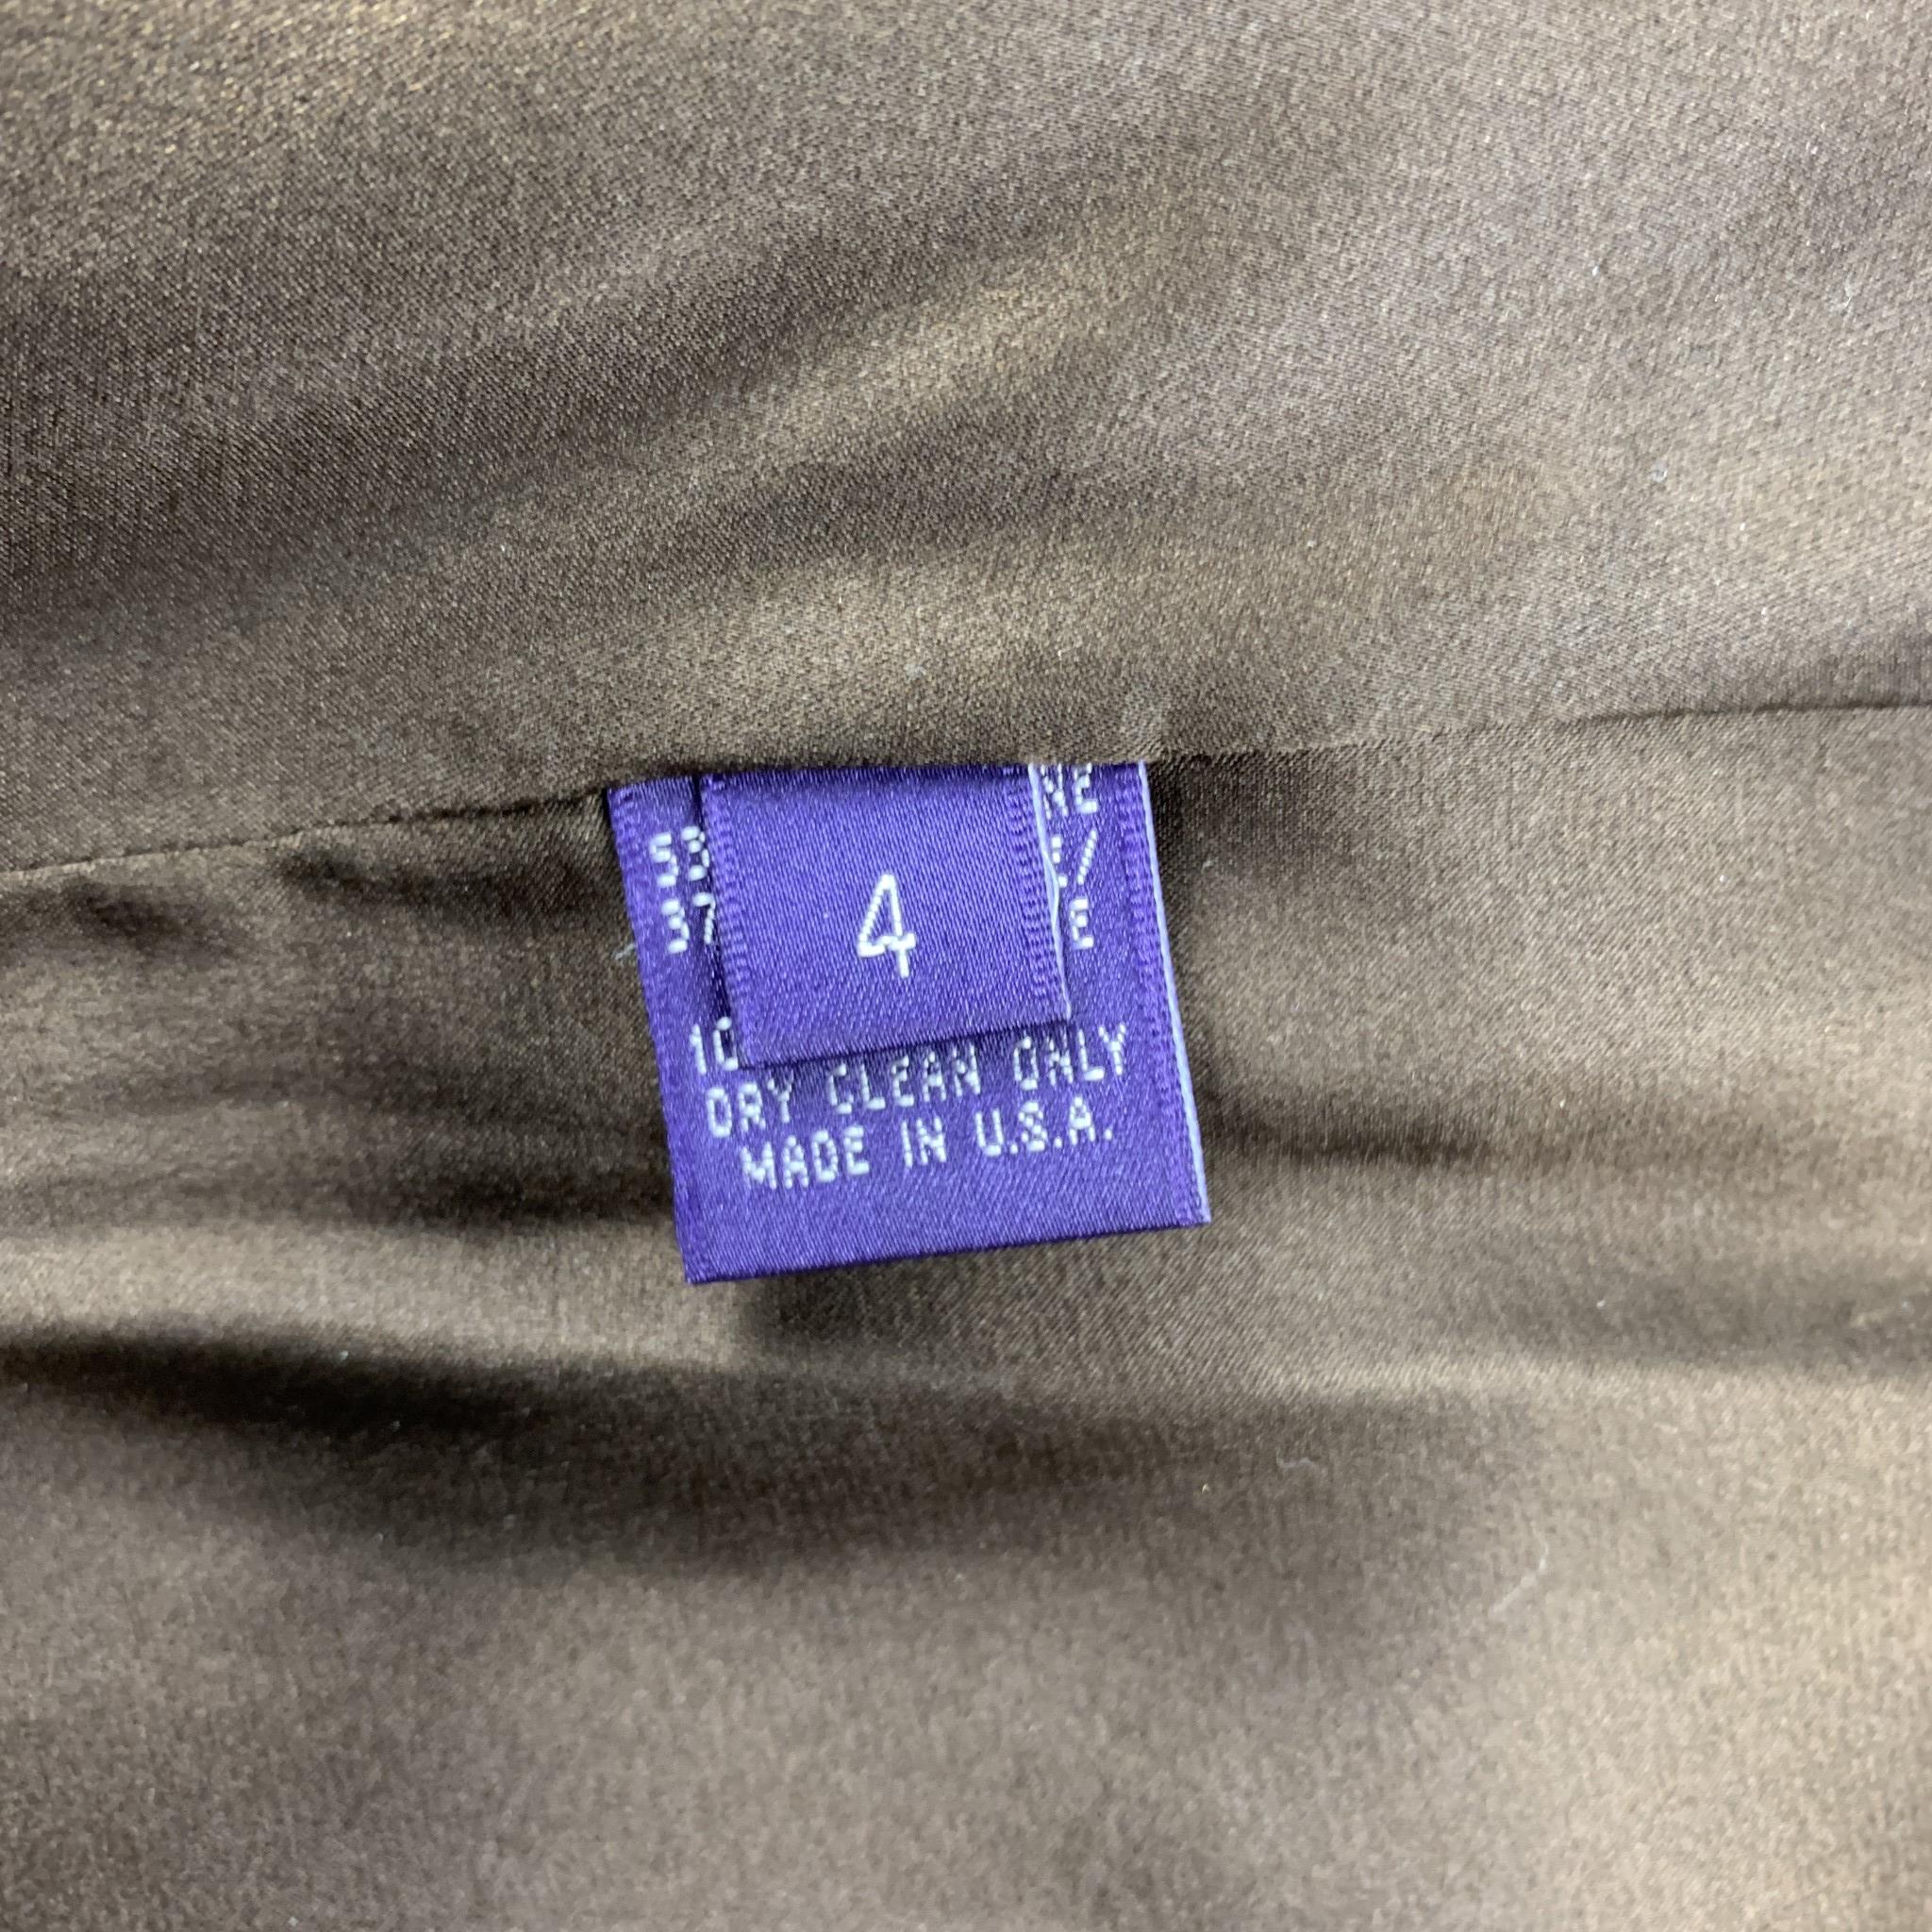 purple a line skirt